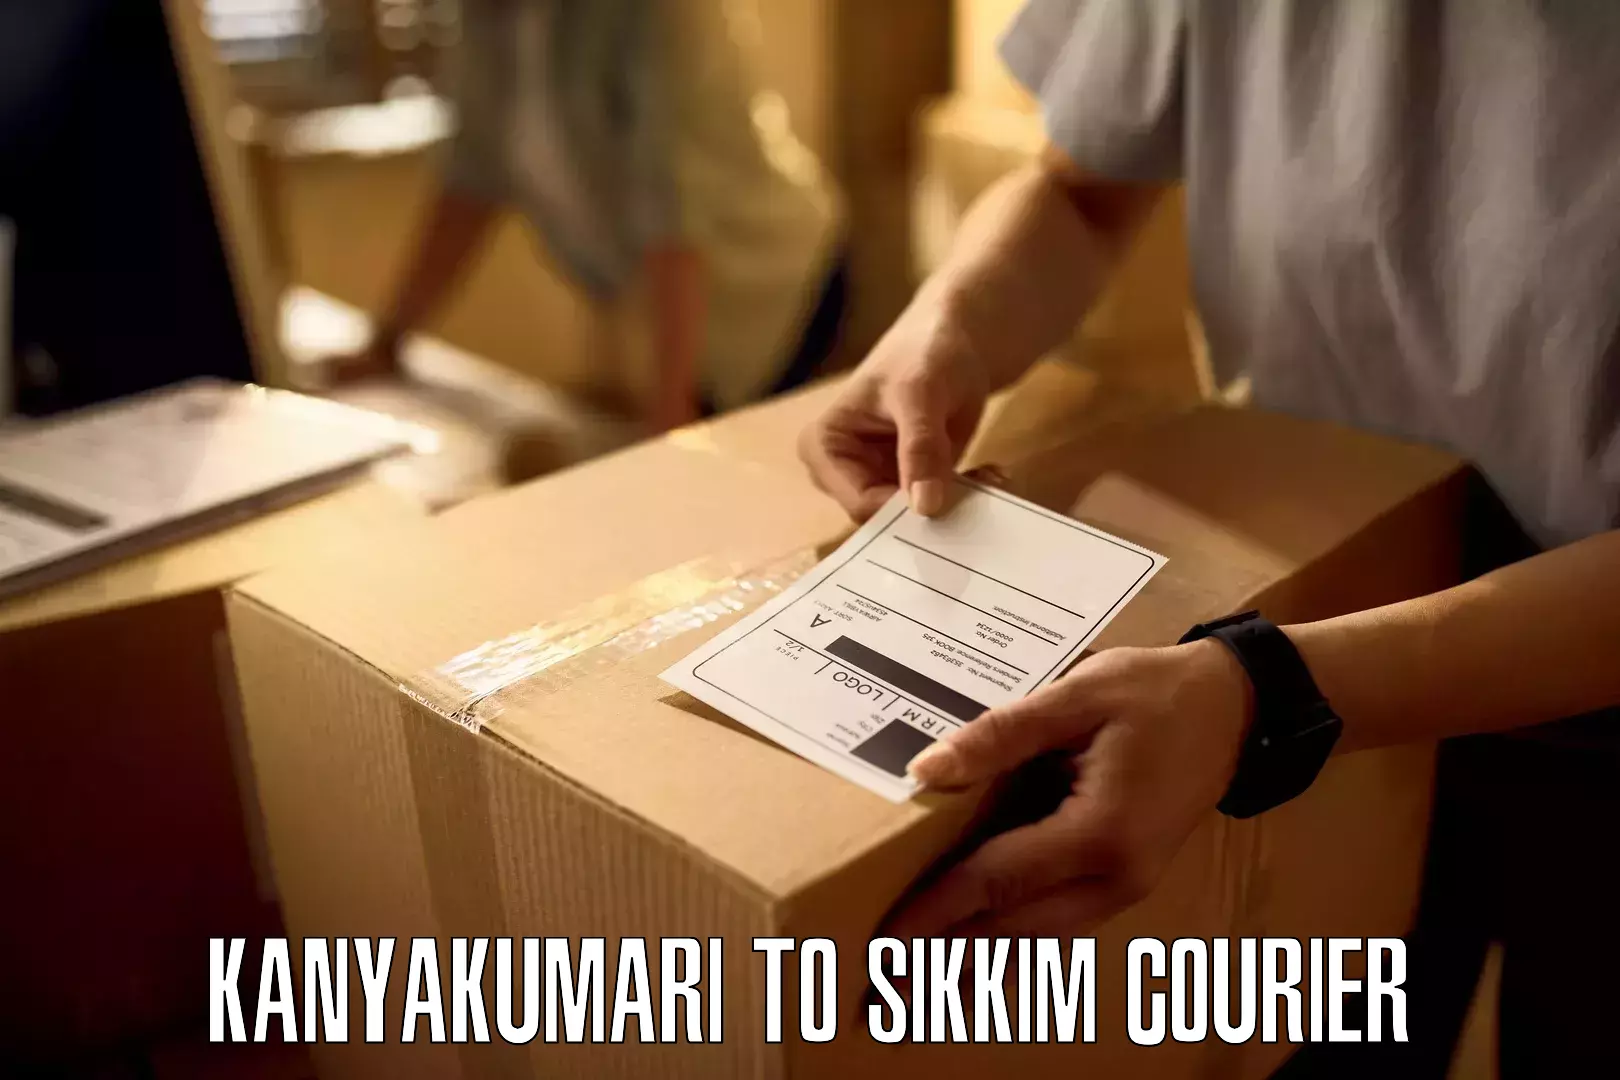 E-commerce shipping partnerships in Kanyakumari to West Sikkim